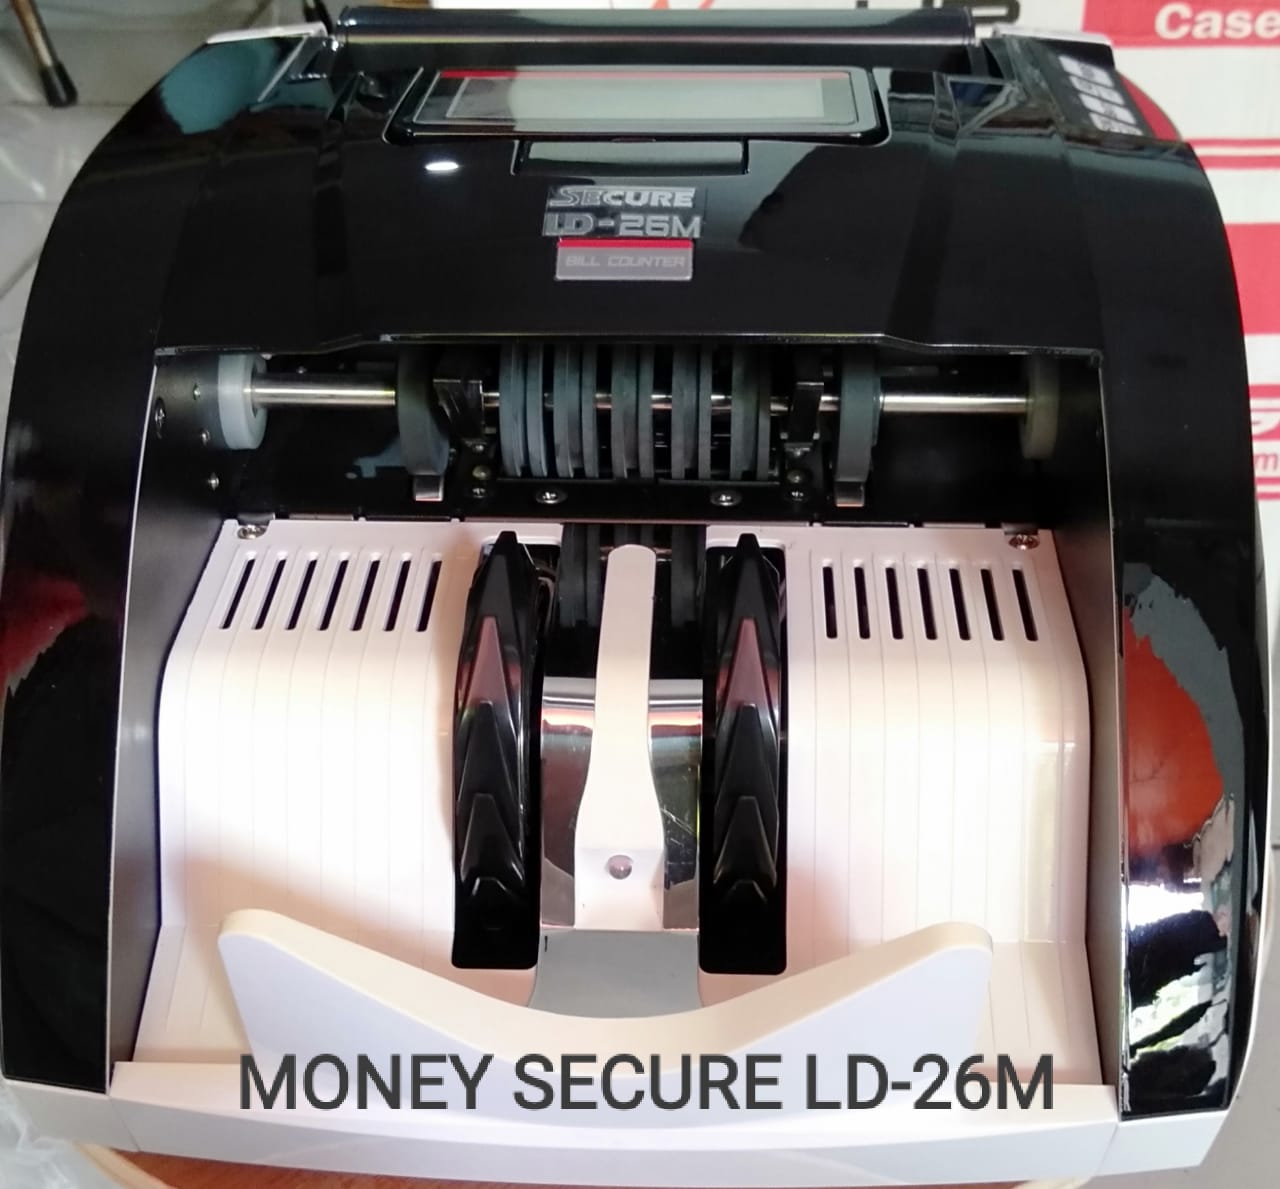 MONEY SECURE LD-26M